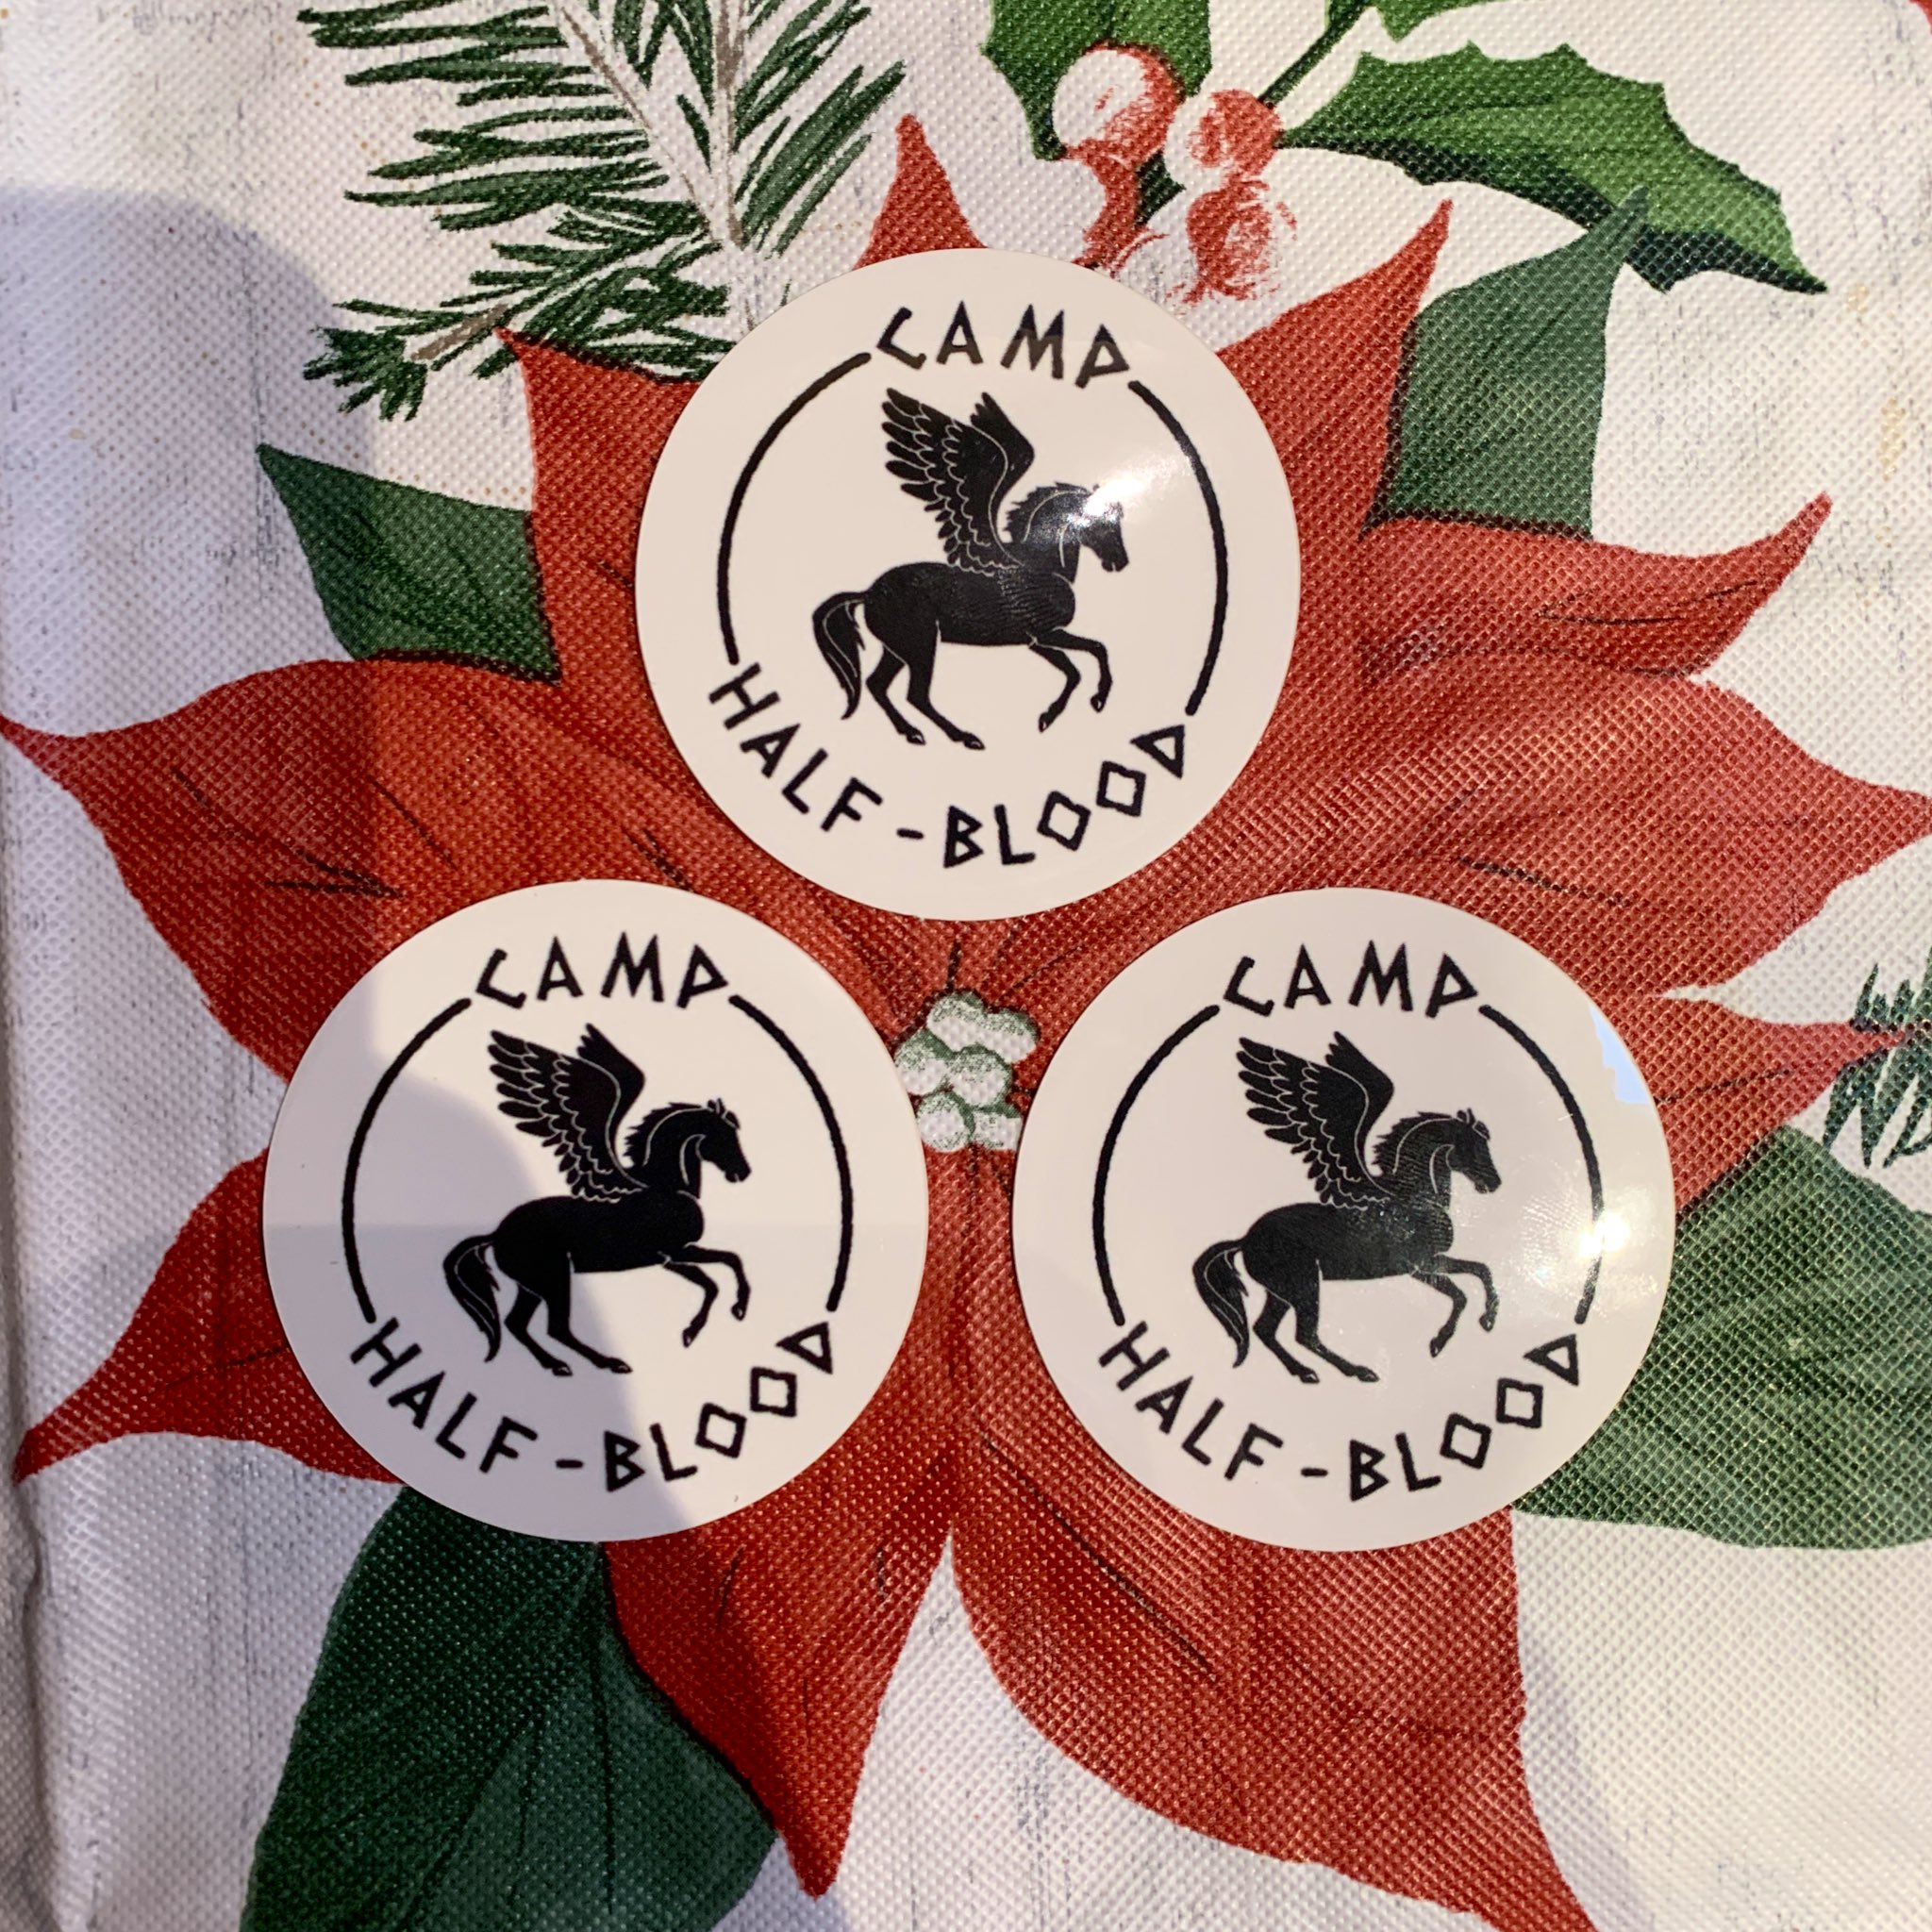 camp half-blood - Camp Half Blood - Sticker